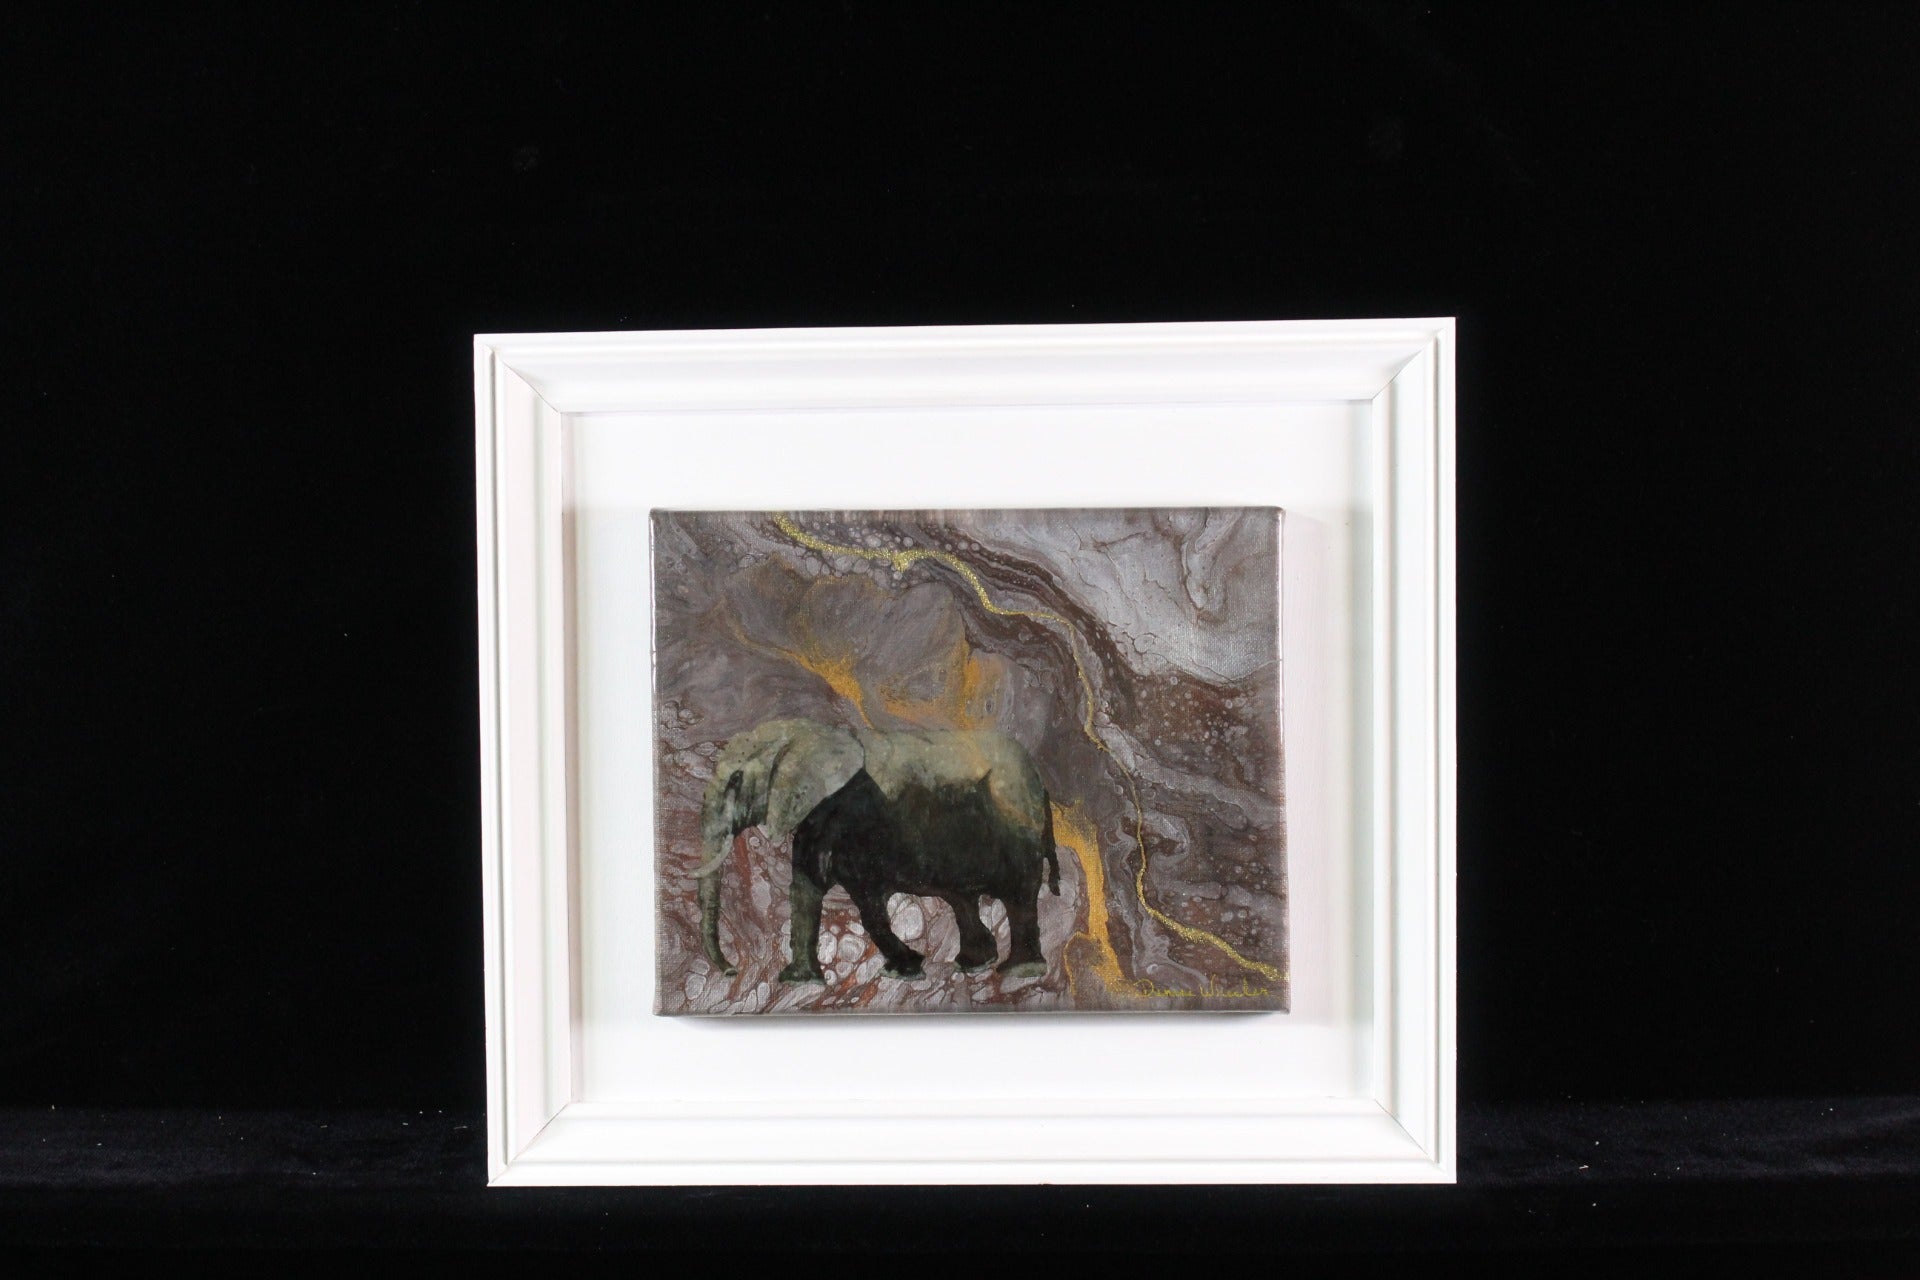 8x10 Framed Art - Bull Elephant